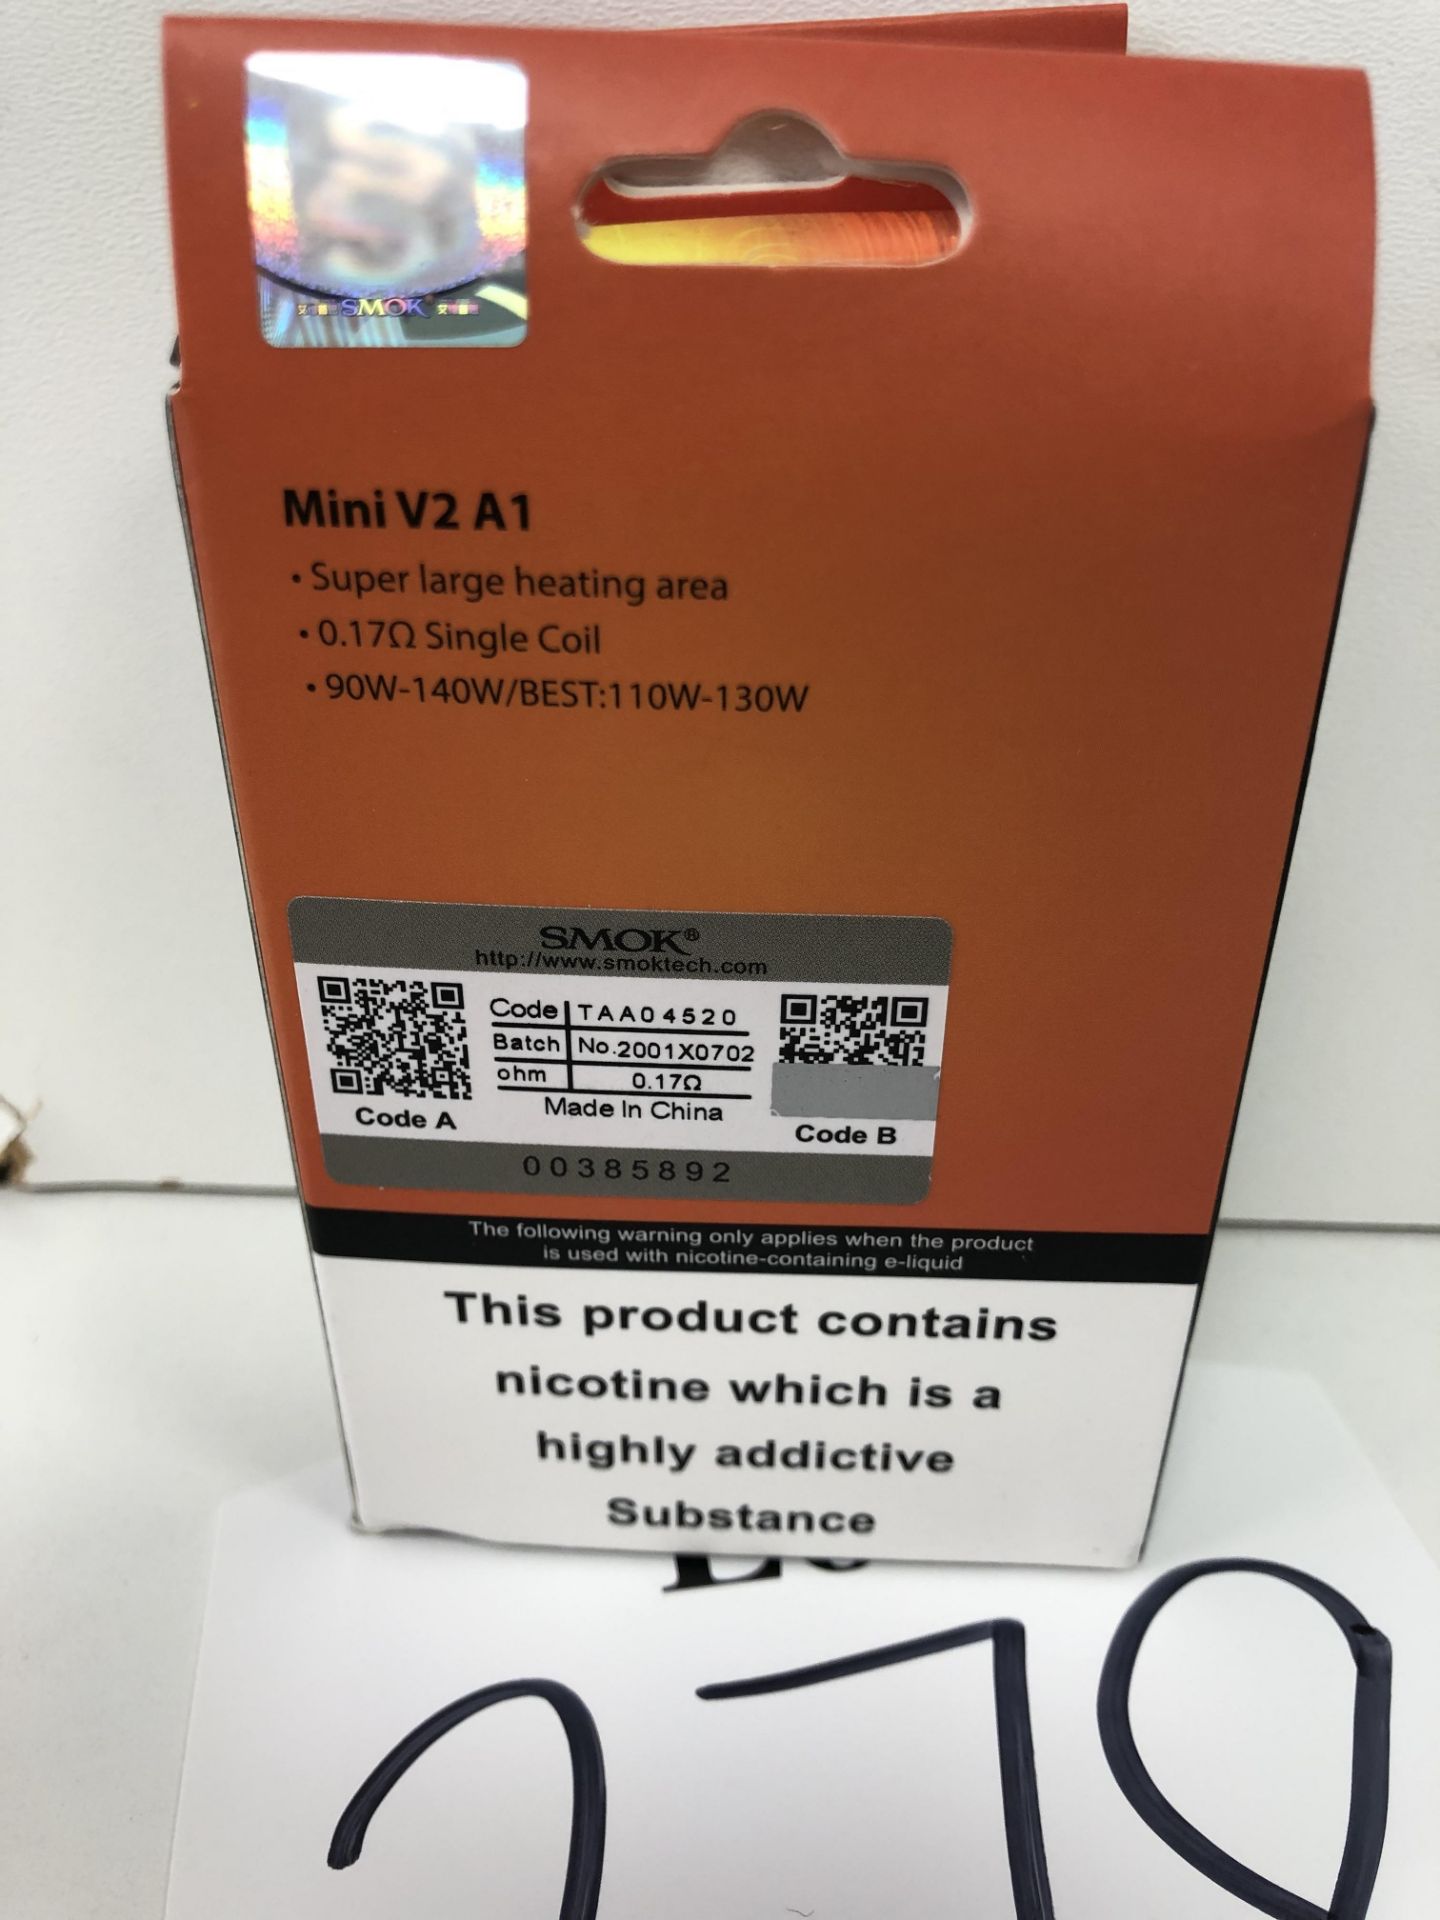 2 x Smok Mini V2 A1 BNIB 3 coils per box |6940695616381 - Image 3 of 3